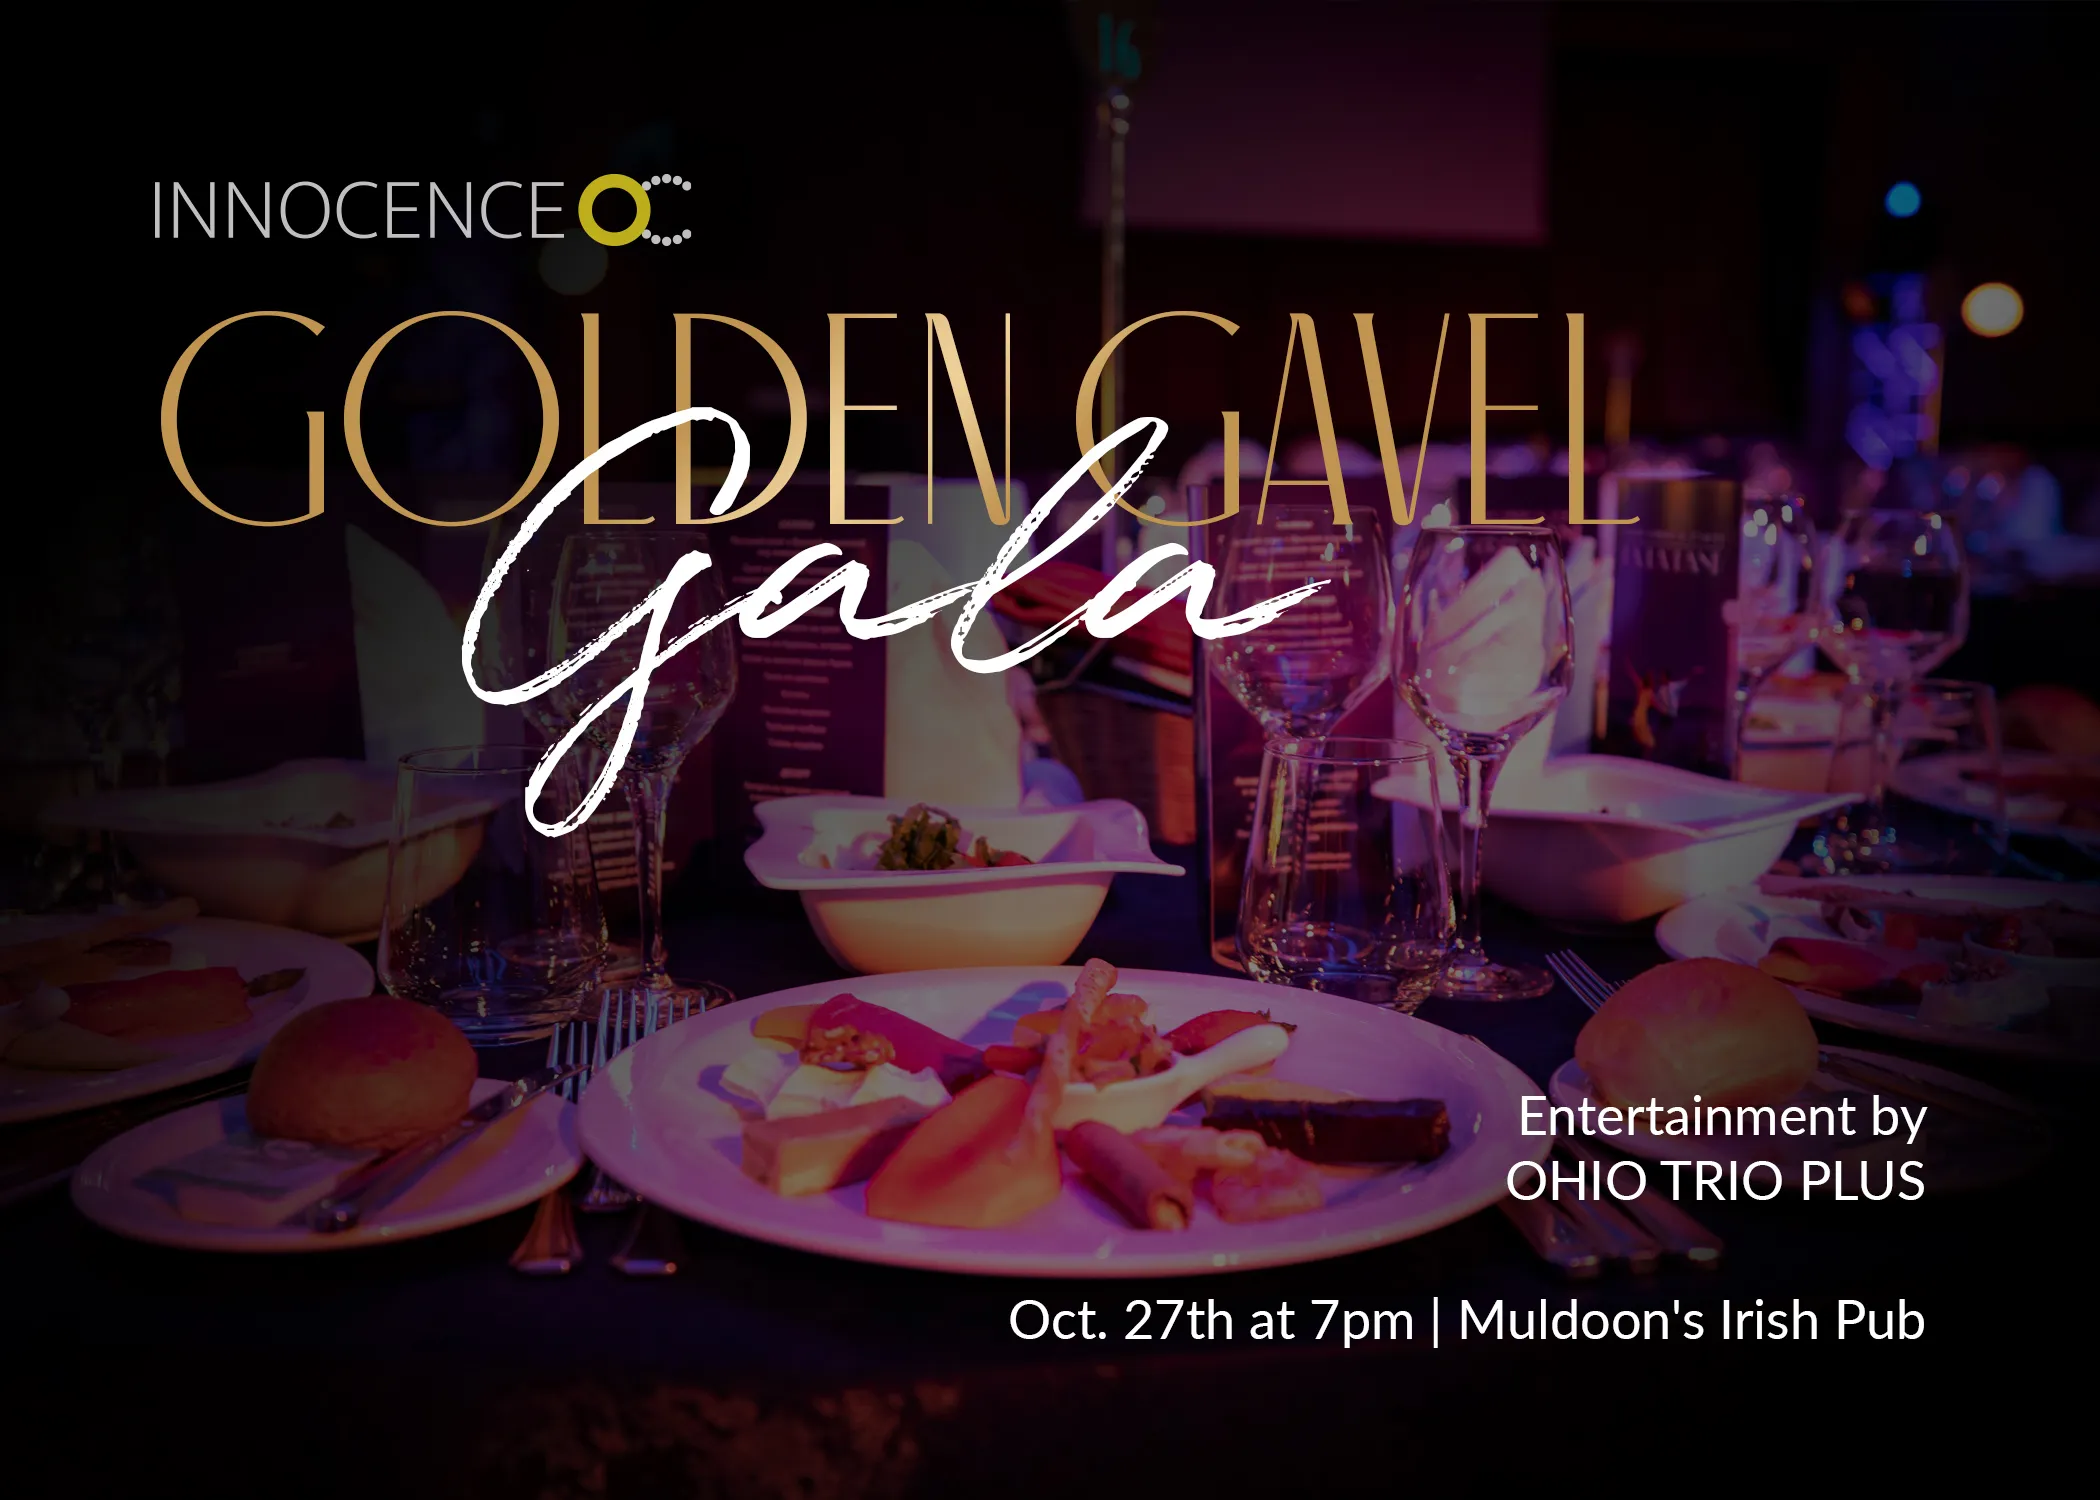 The Golden Gavel Gala